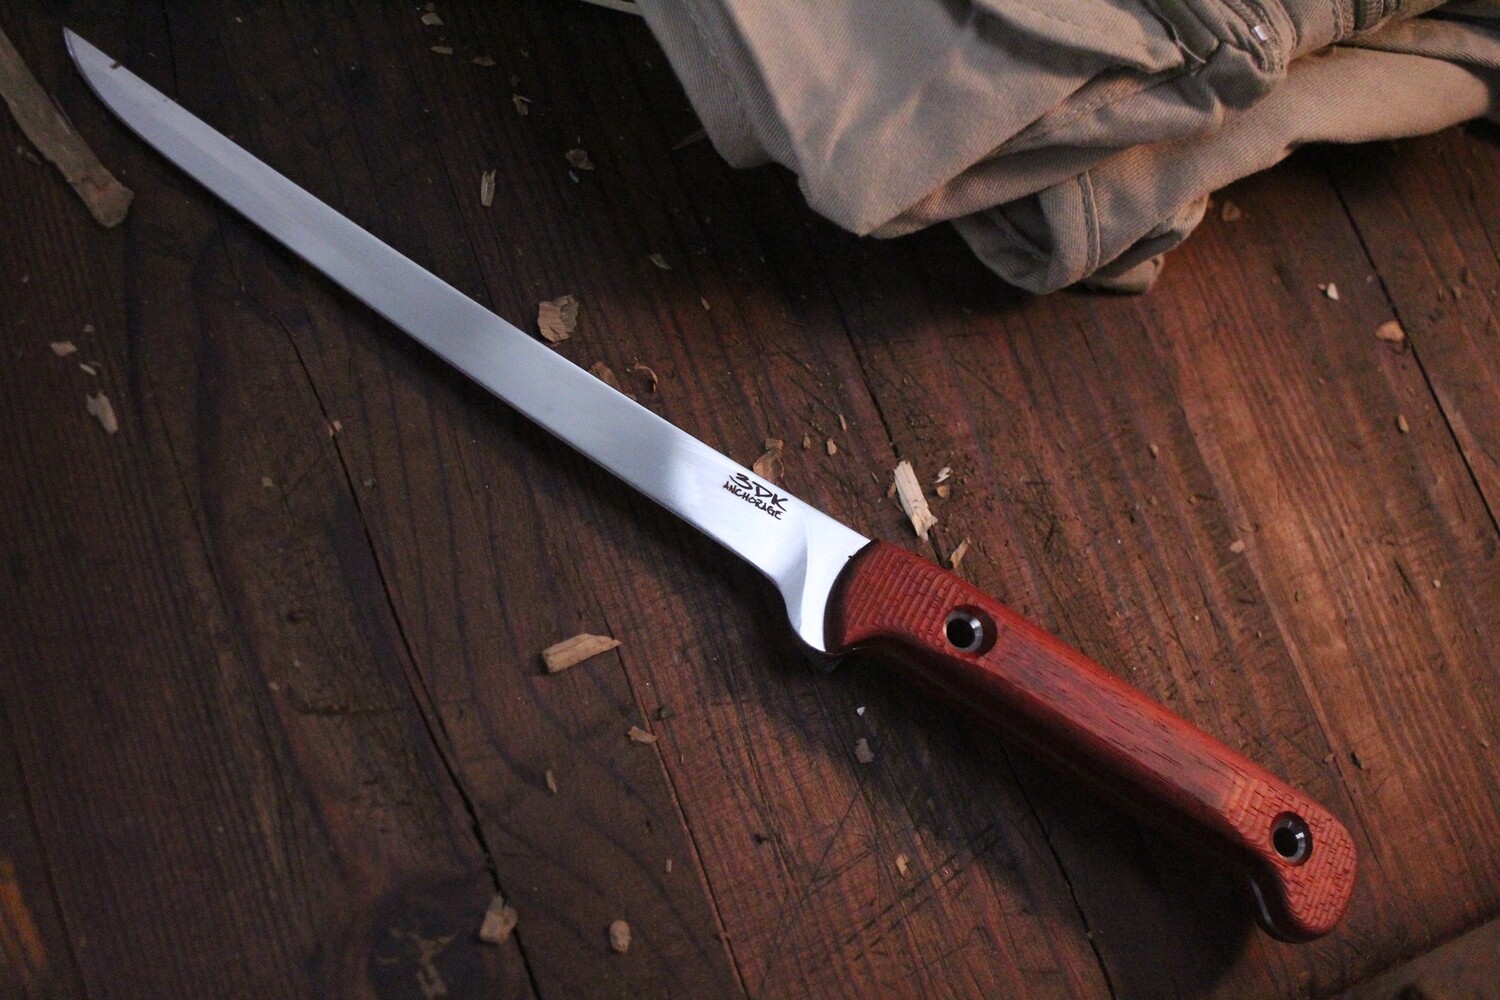 3DK Fisher 8" Fillet Knife,  Padauk Wood